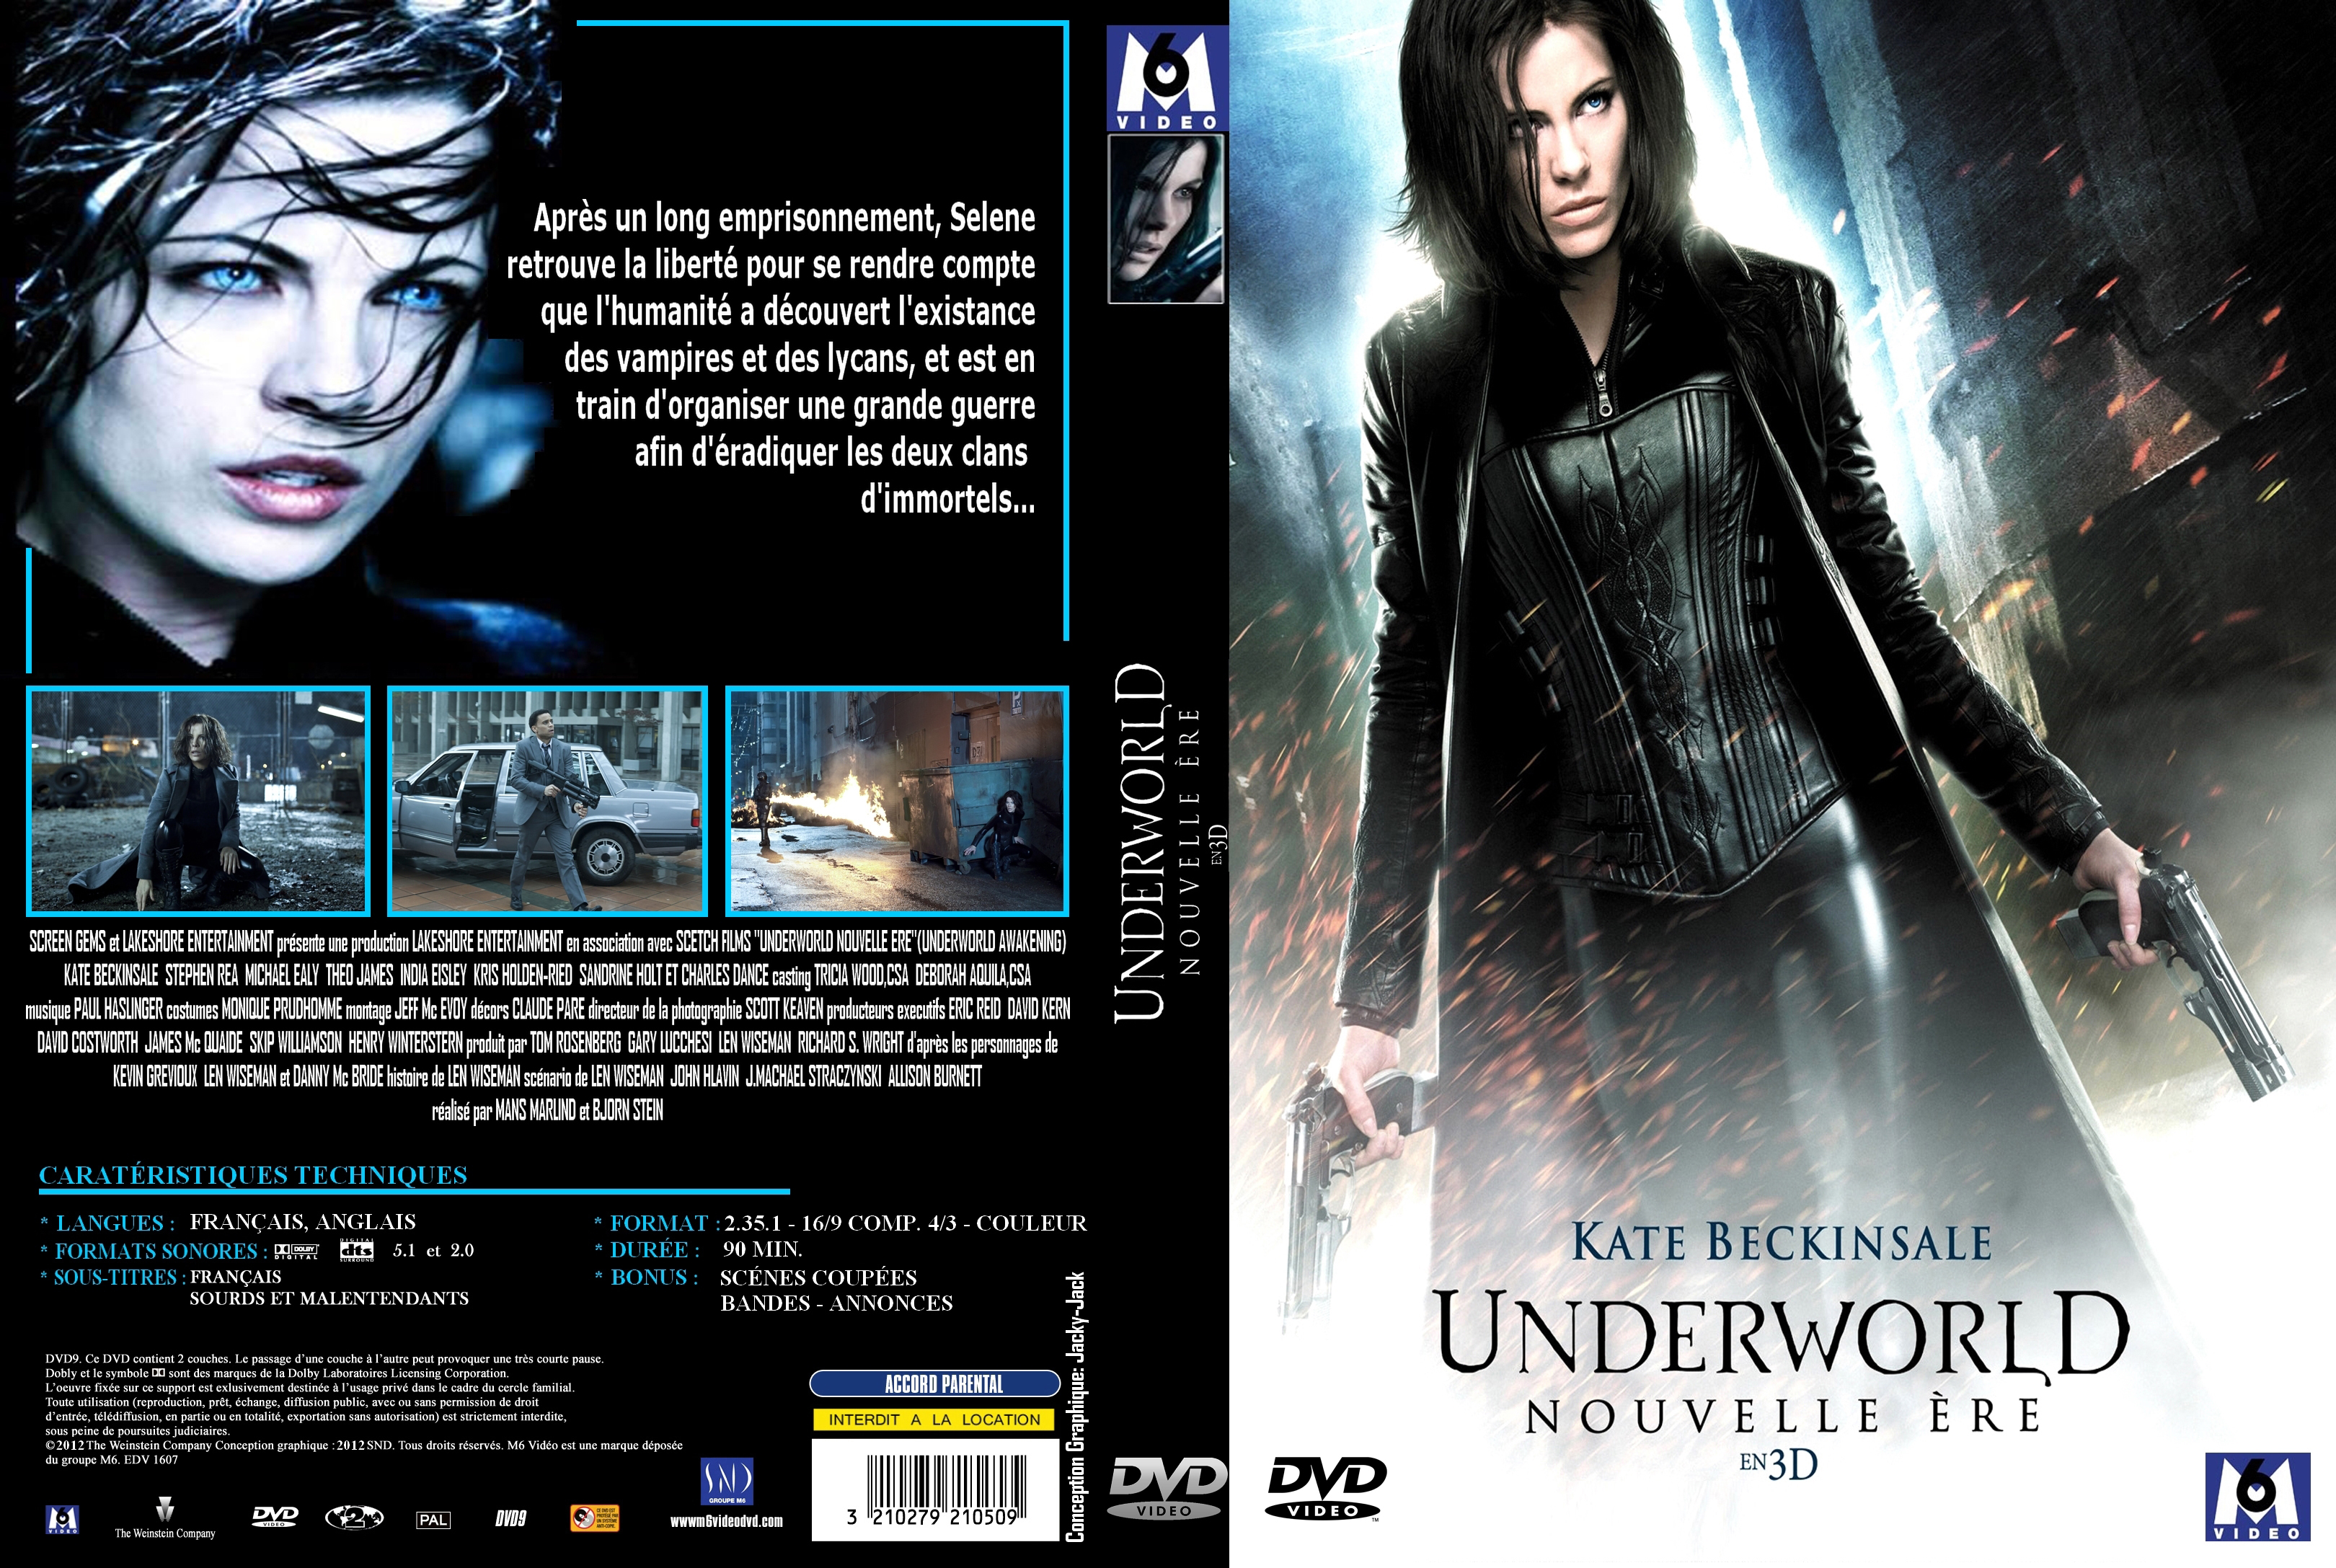 Jaquette DVD Underworld Nouvelle re custom